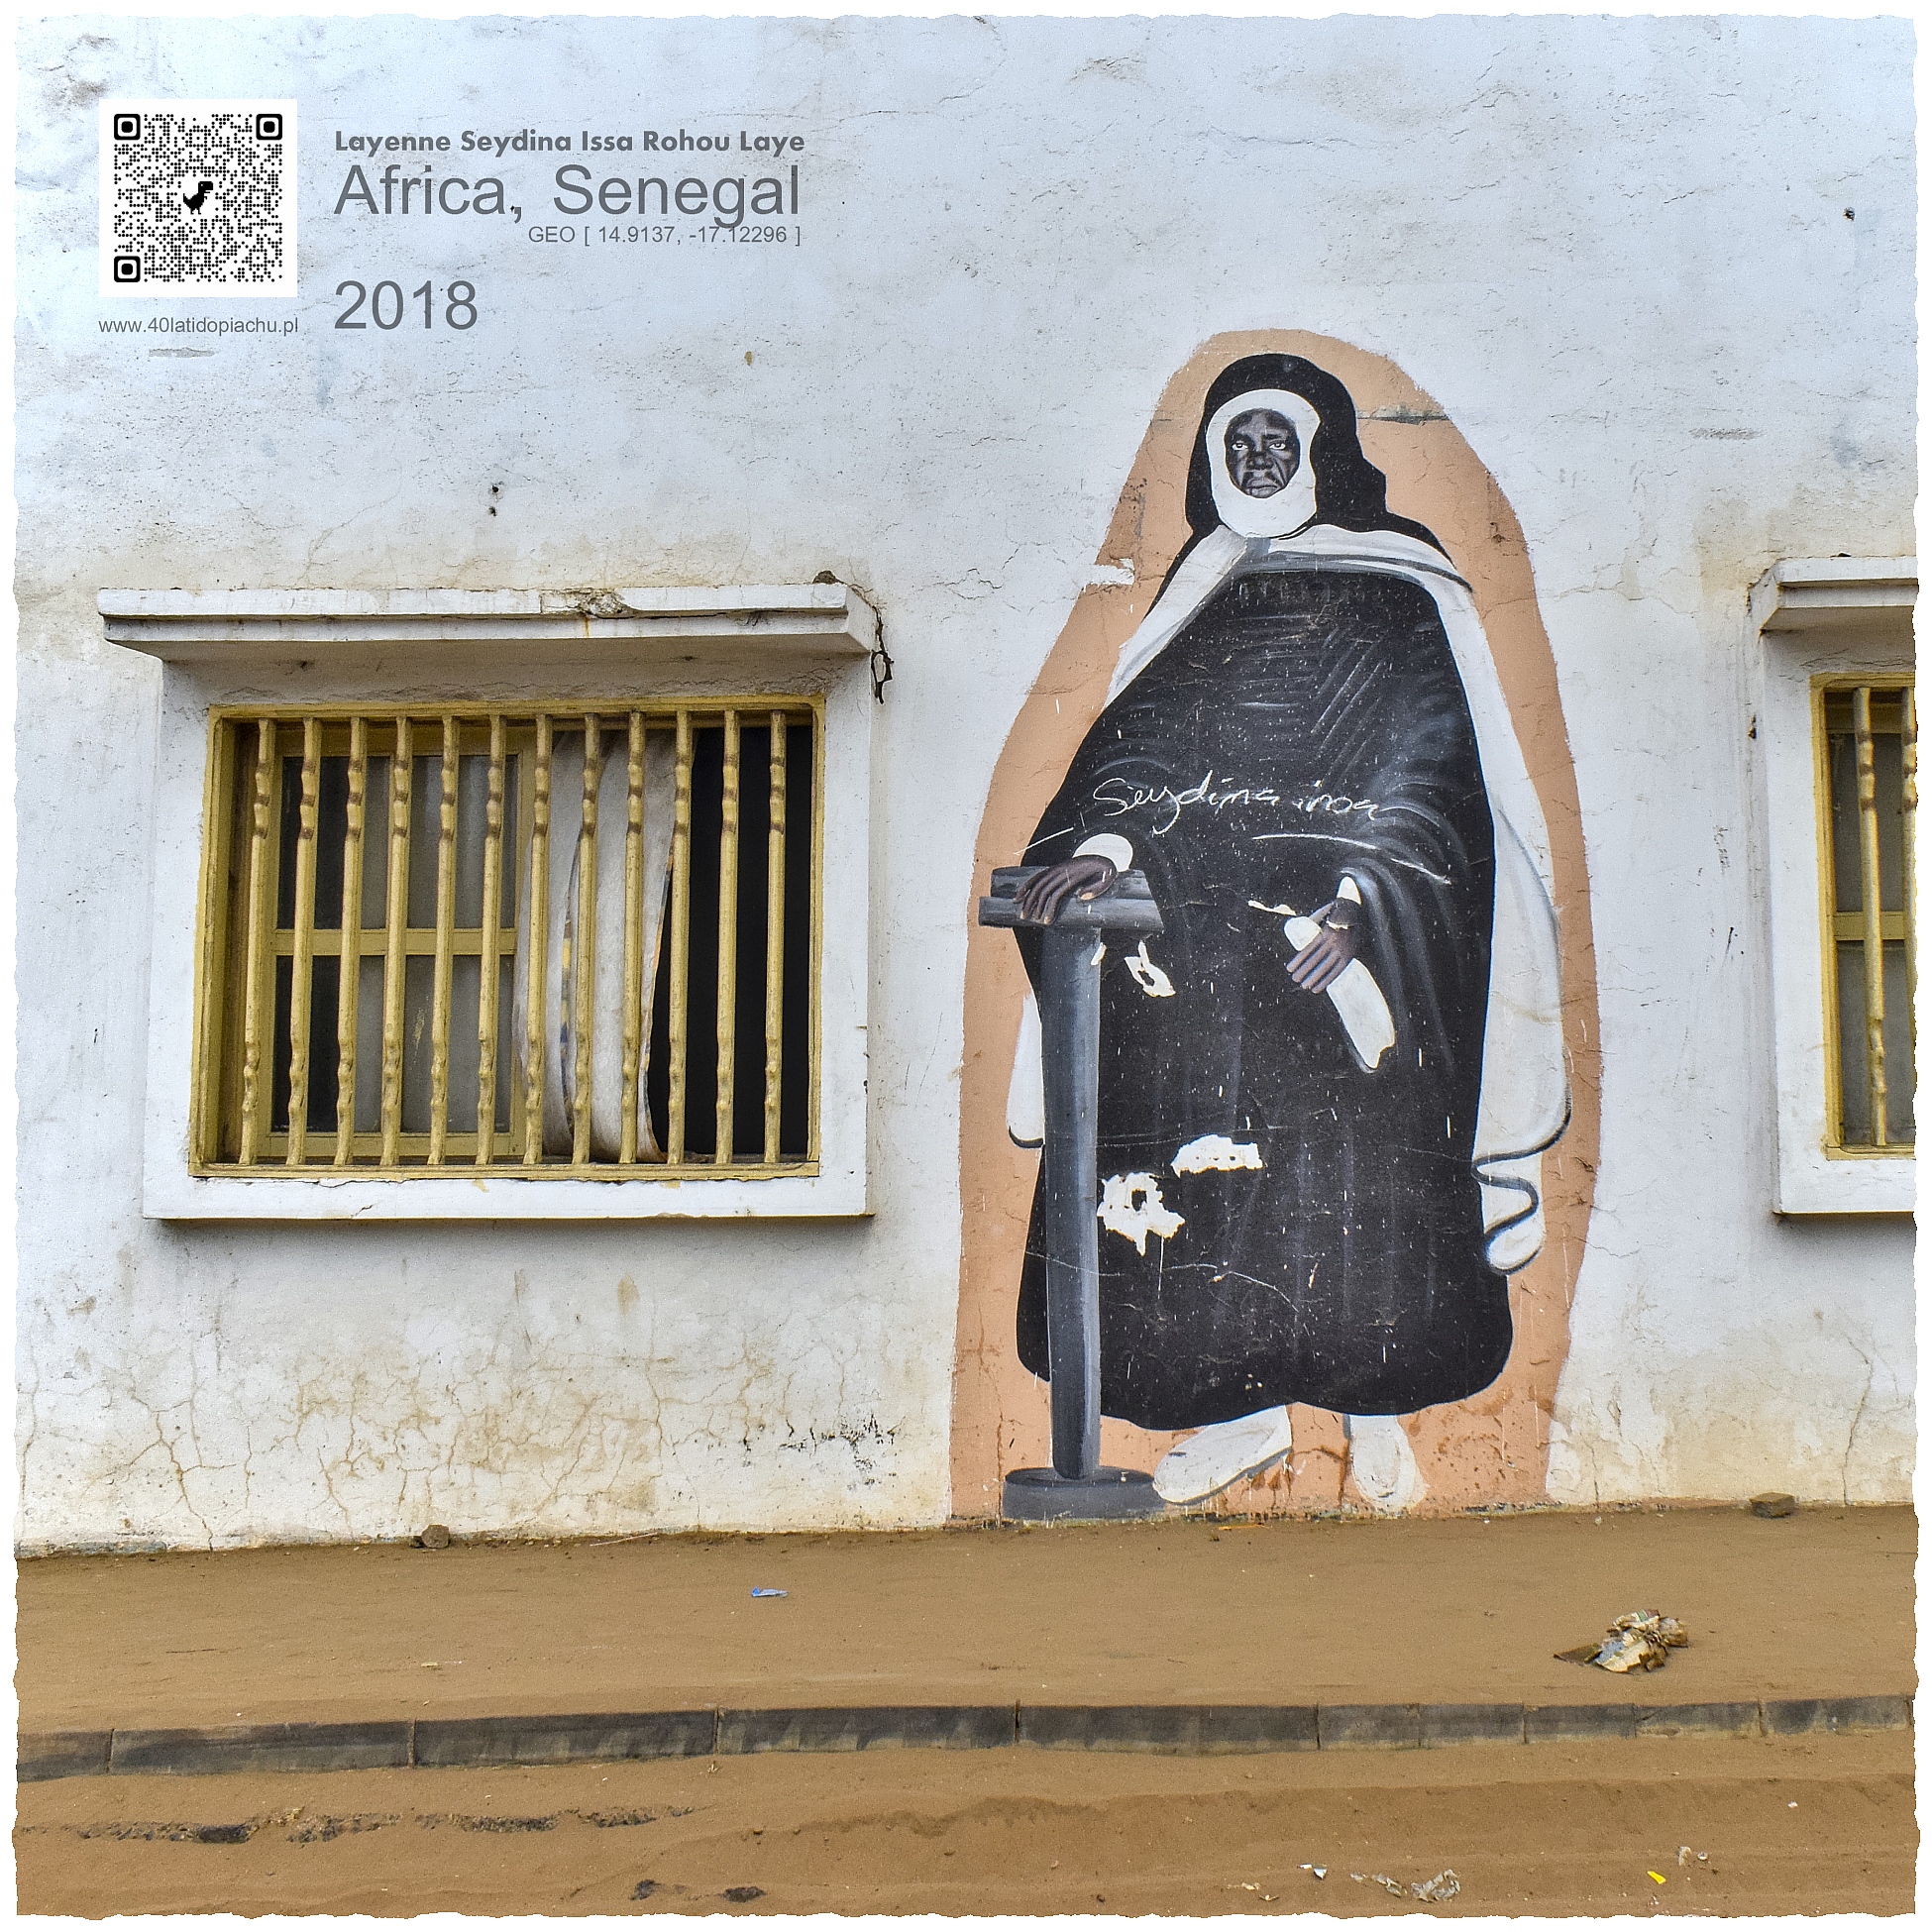 Senegal Czarny Jezus, Seydina Issa Rohou Laye